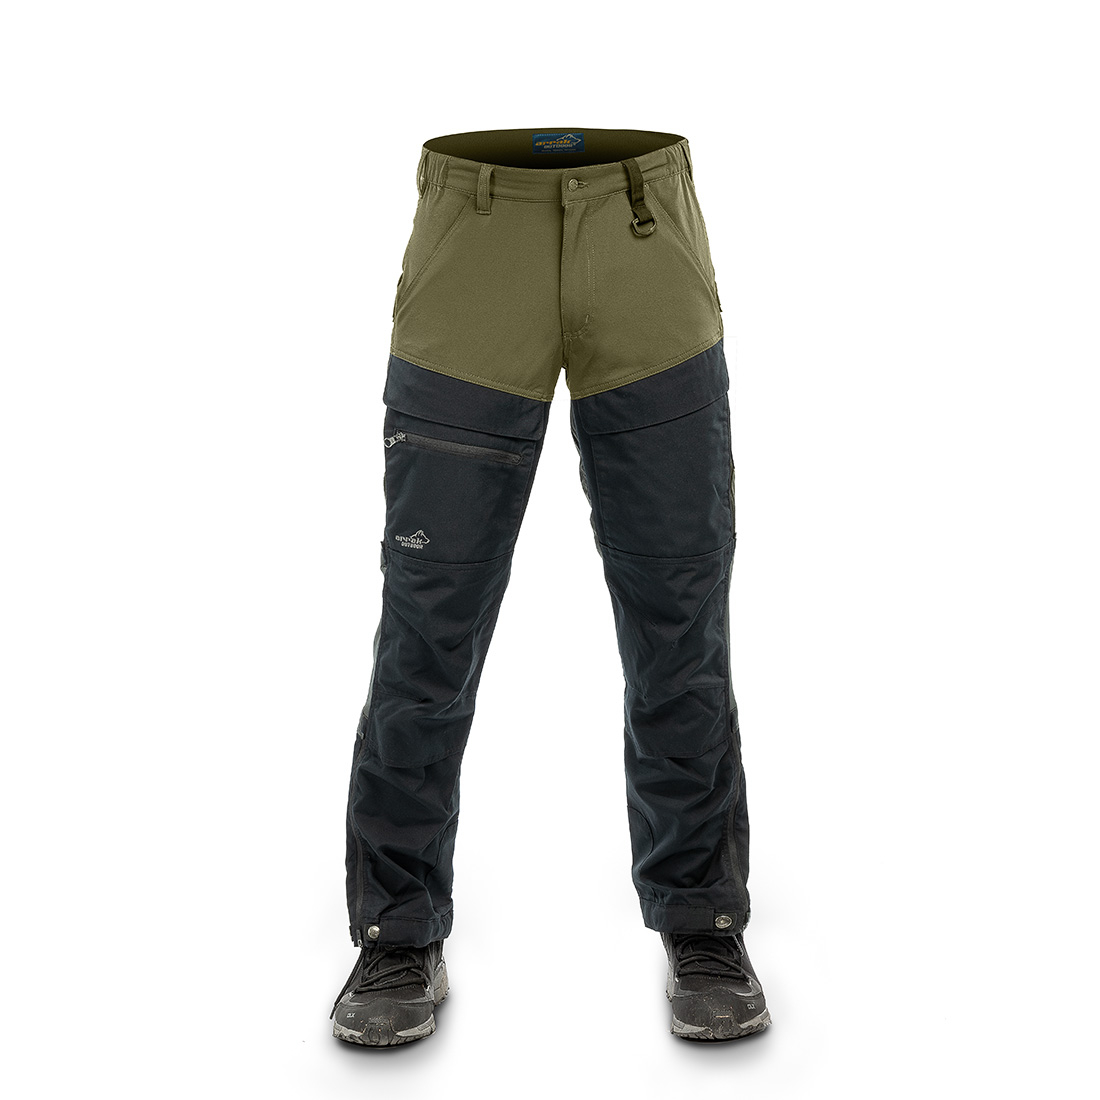 Arrak Outdoor Hybrid Outdoor Pants, Man - Olive